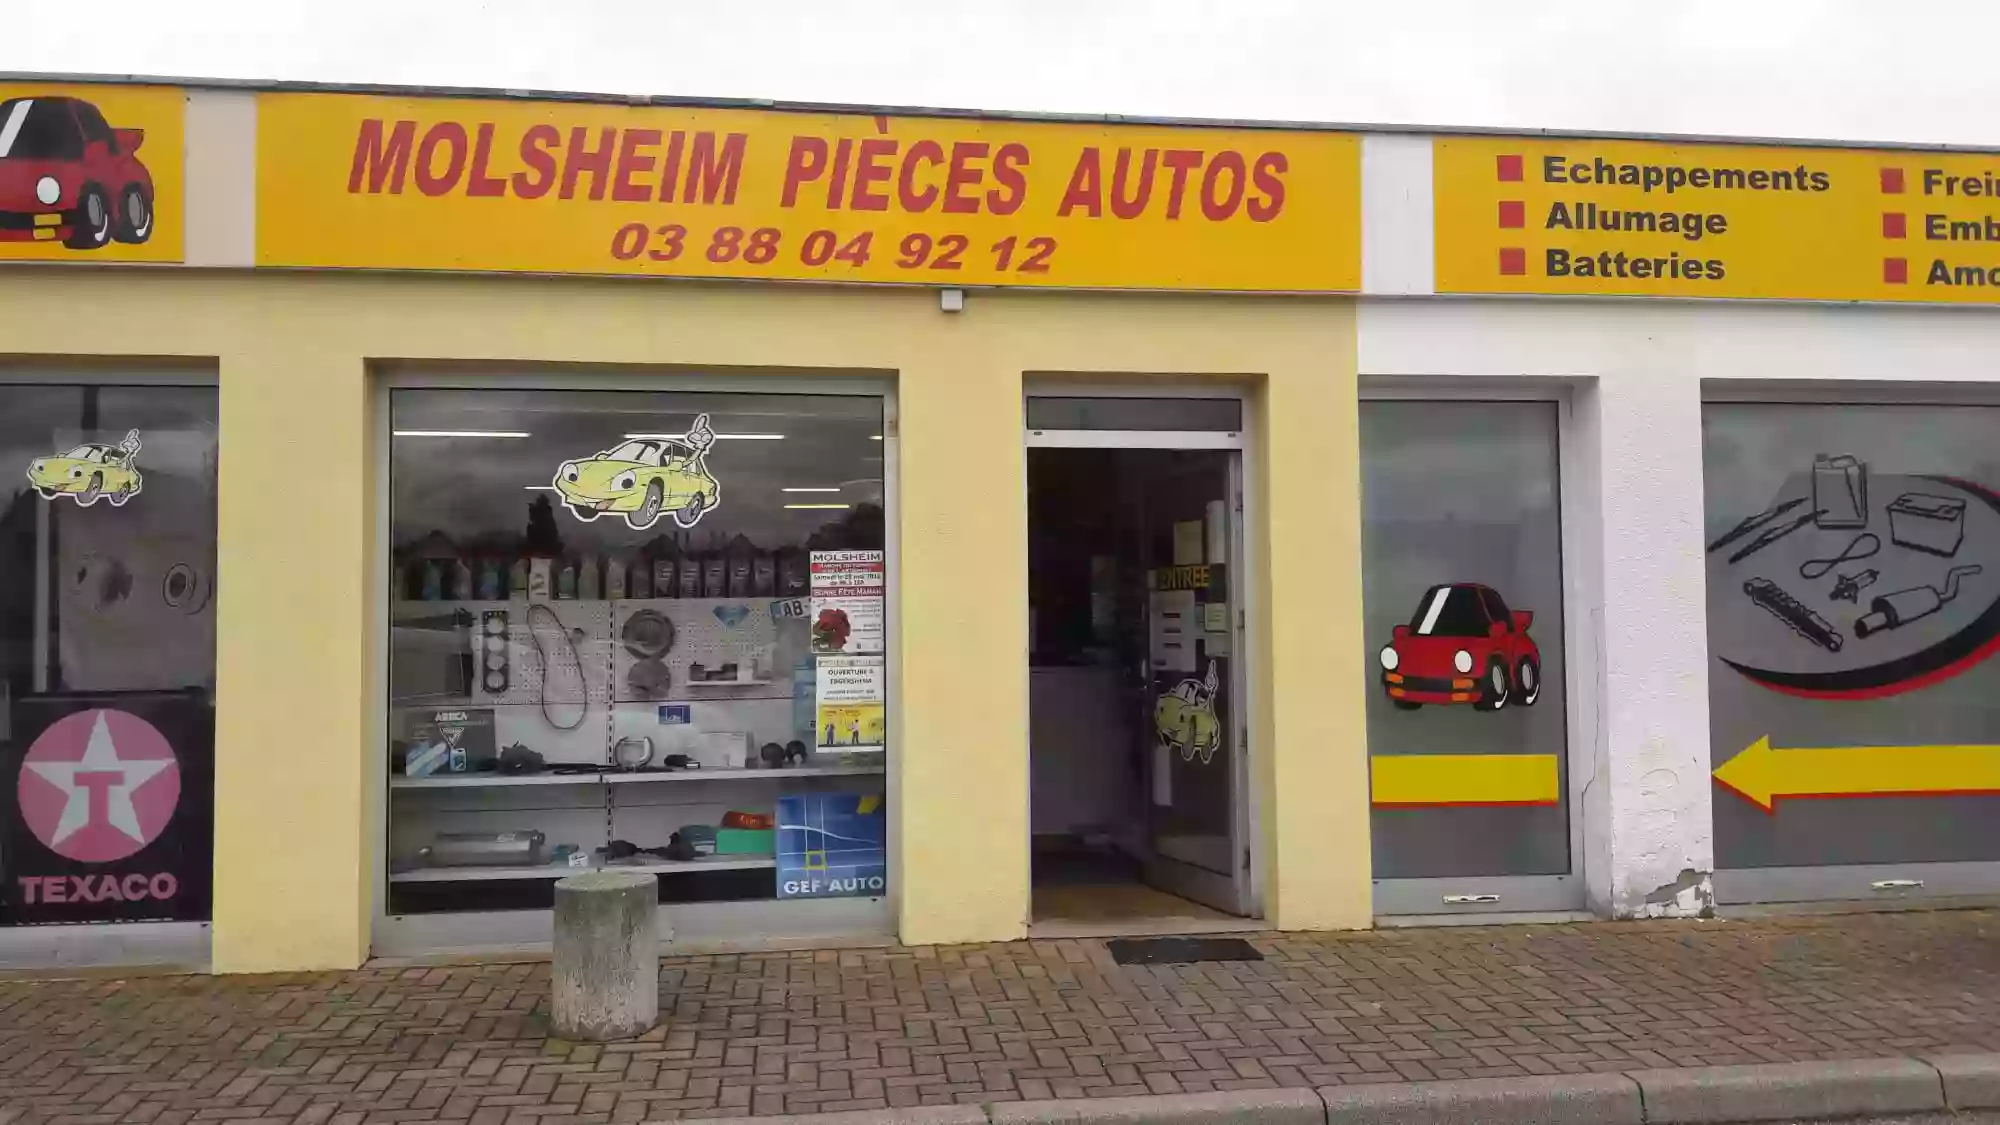 Molsheim Pieces Autos - Gefauto